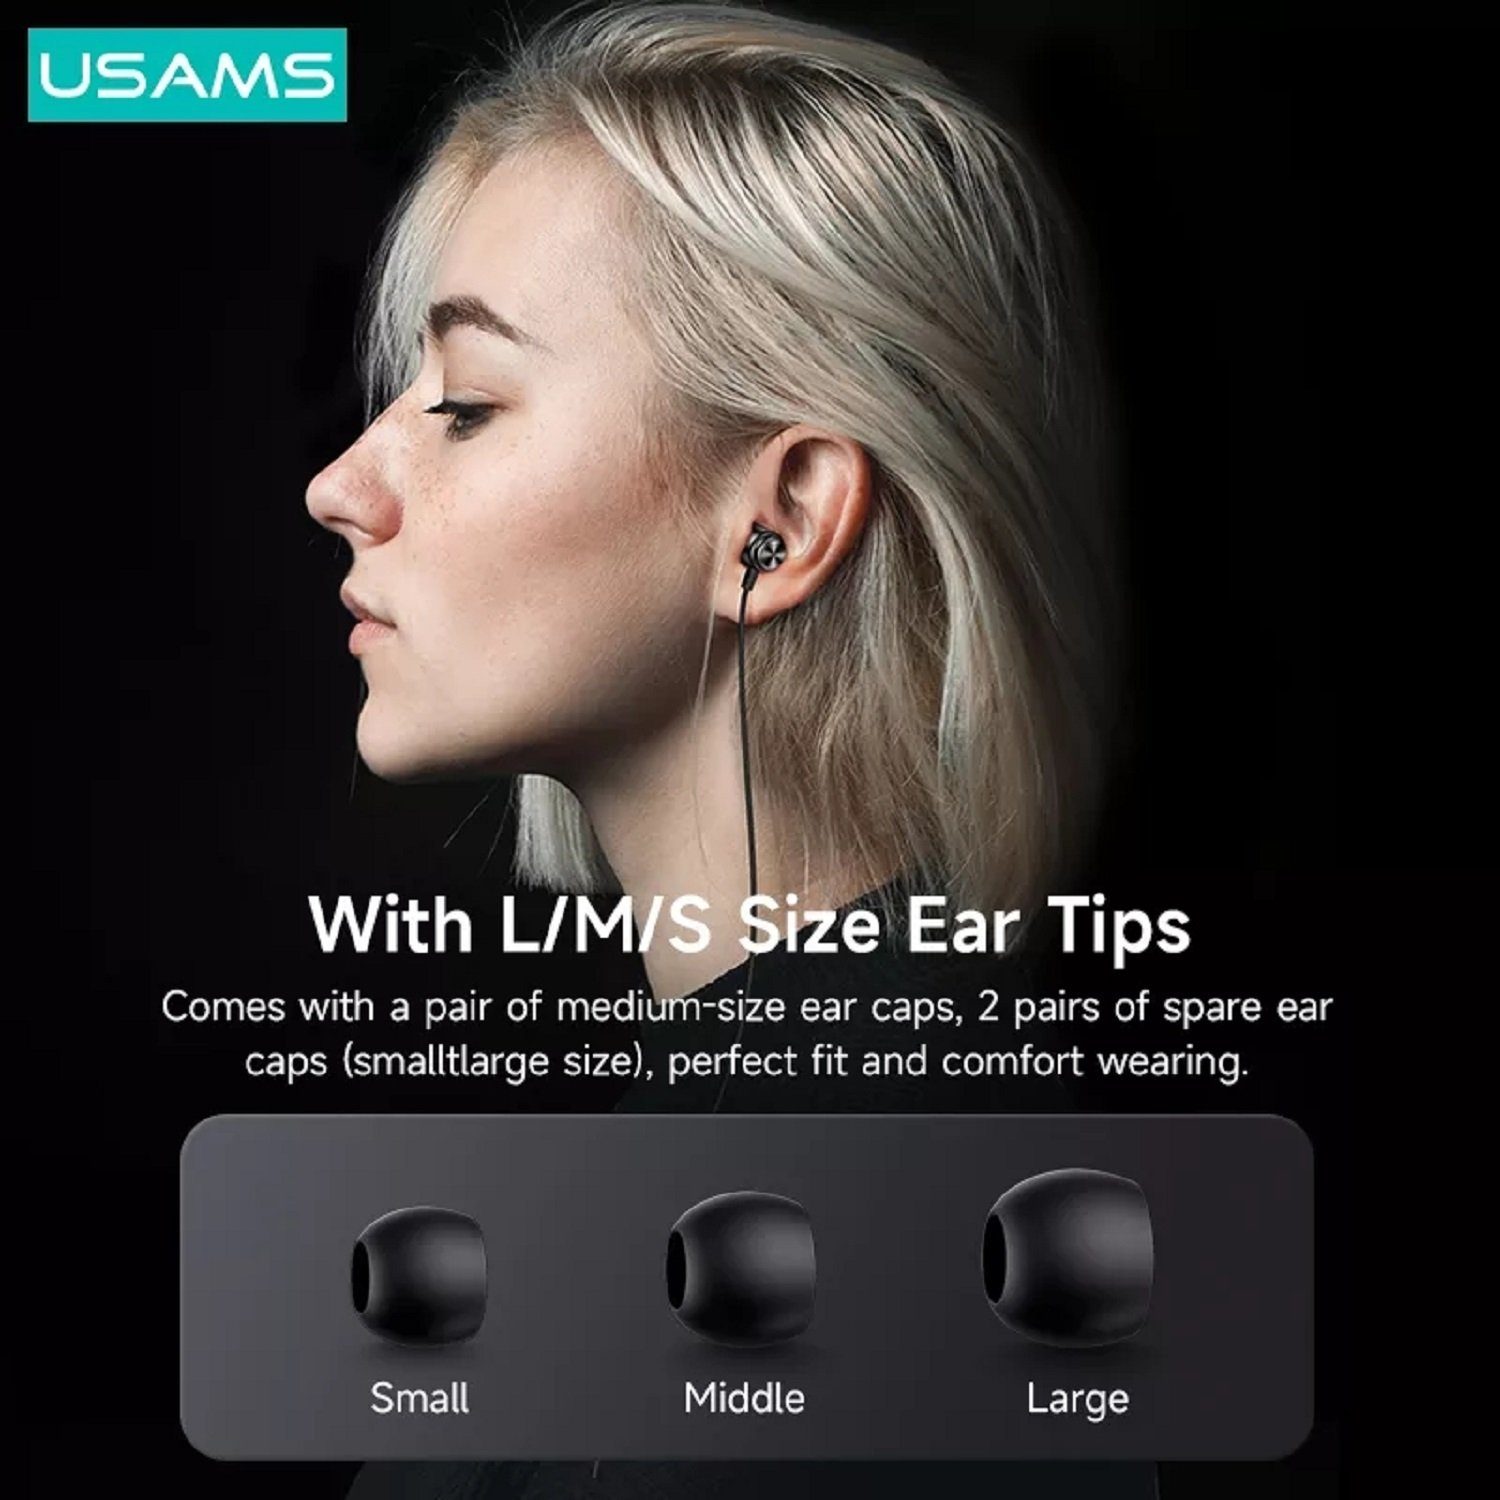 USAMS EP-44 Aux 3,5mm Stereo-Kopfhörer) Musik, Bass und (Kabelgebunden, intergrierte Steuerung HiFi Ohrhörer mit für Anrufe 3,5mm, 1,2m, Stereo In-Ear-Kopfhörer Kopfhörerstecker In-Ear-Kopfhörer, Dunkelrosa